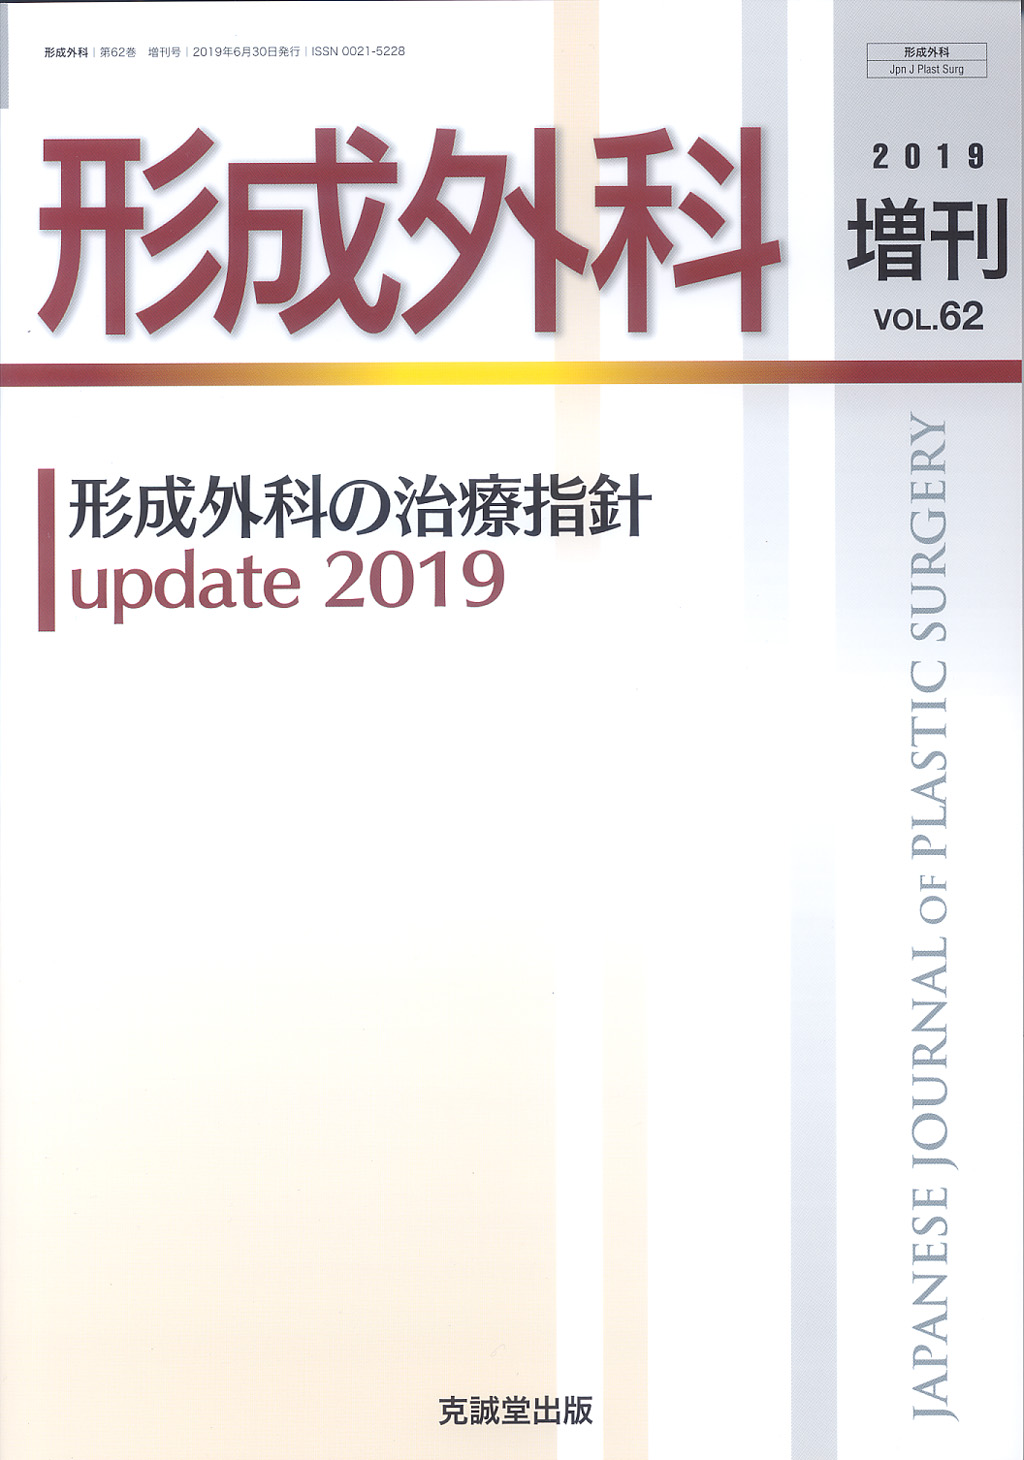 形成外科 2019年増刊号【特集】形成外科の治療指針 update 2019 | 克誠 